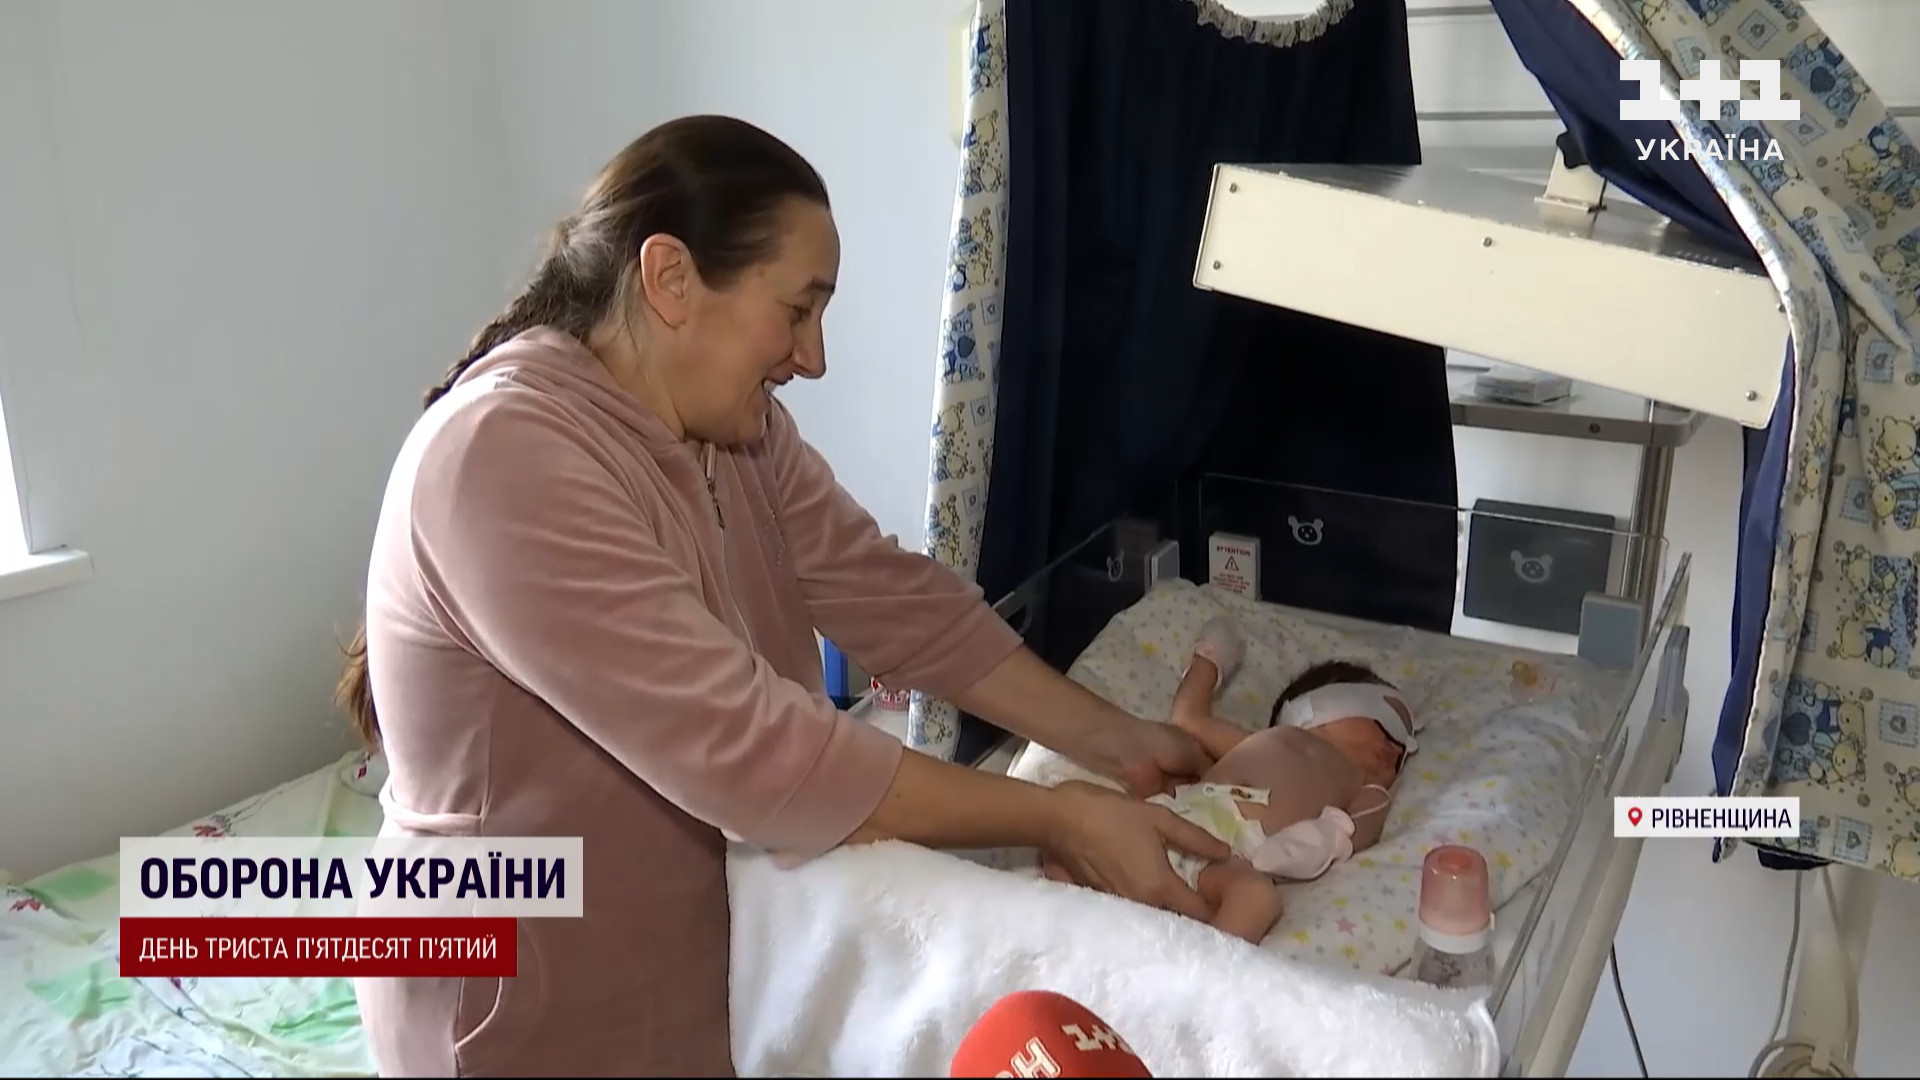 Порно видео украинская девушка беременна